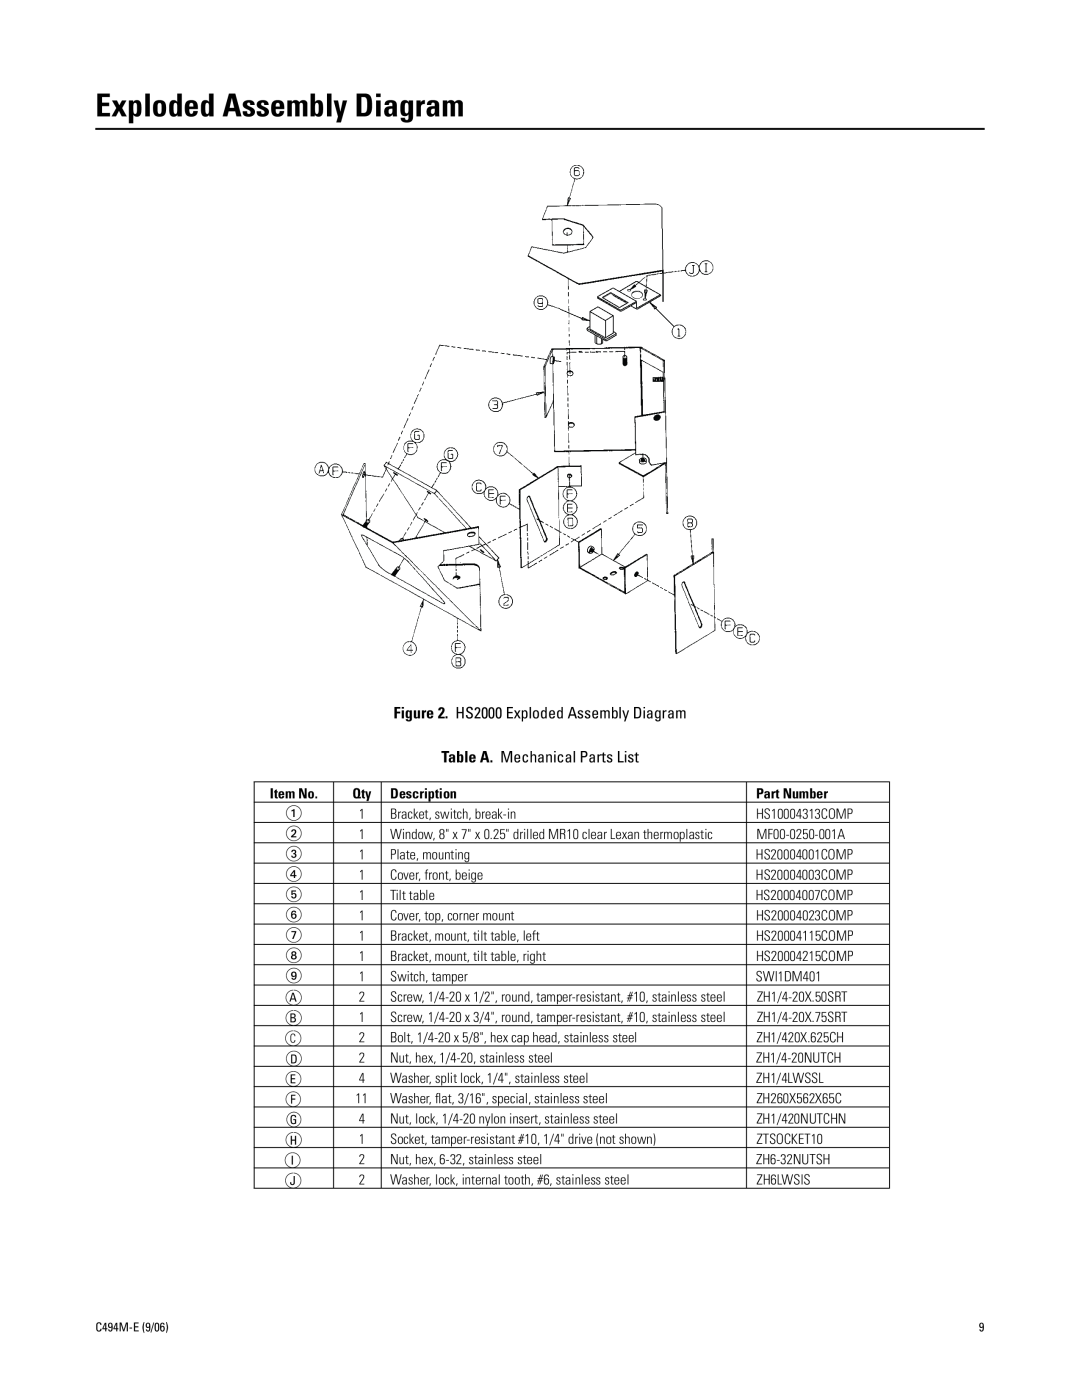 Pelco C494M-E HS2000 Exploded Assembly Diagram, Table A. Mechanical Parts List, Item No, Description, Part Number 